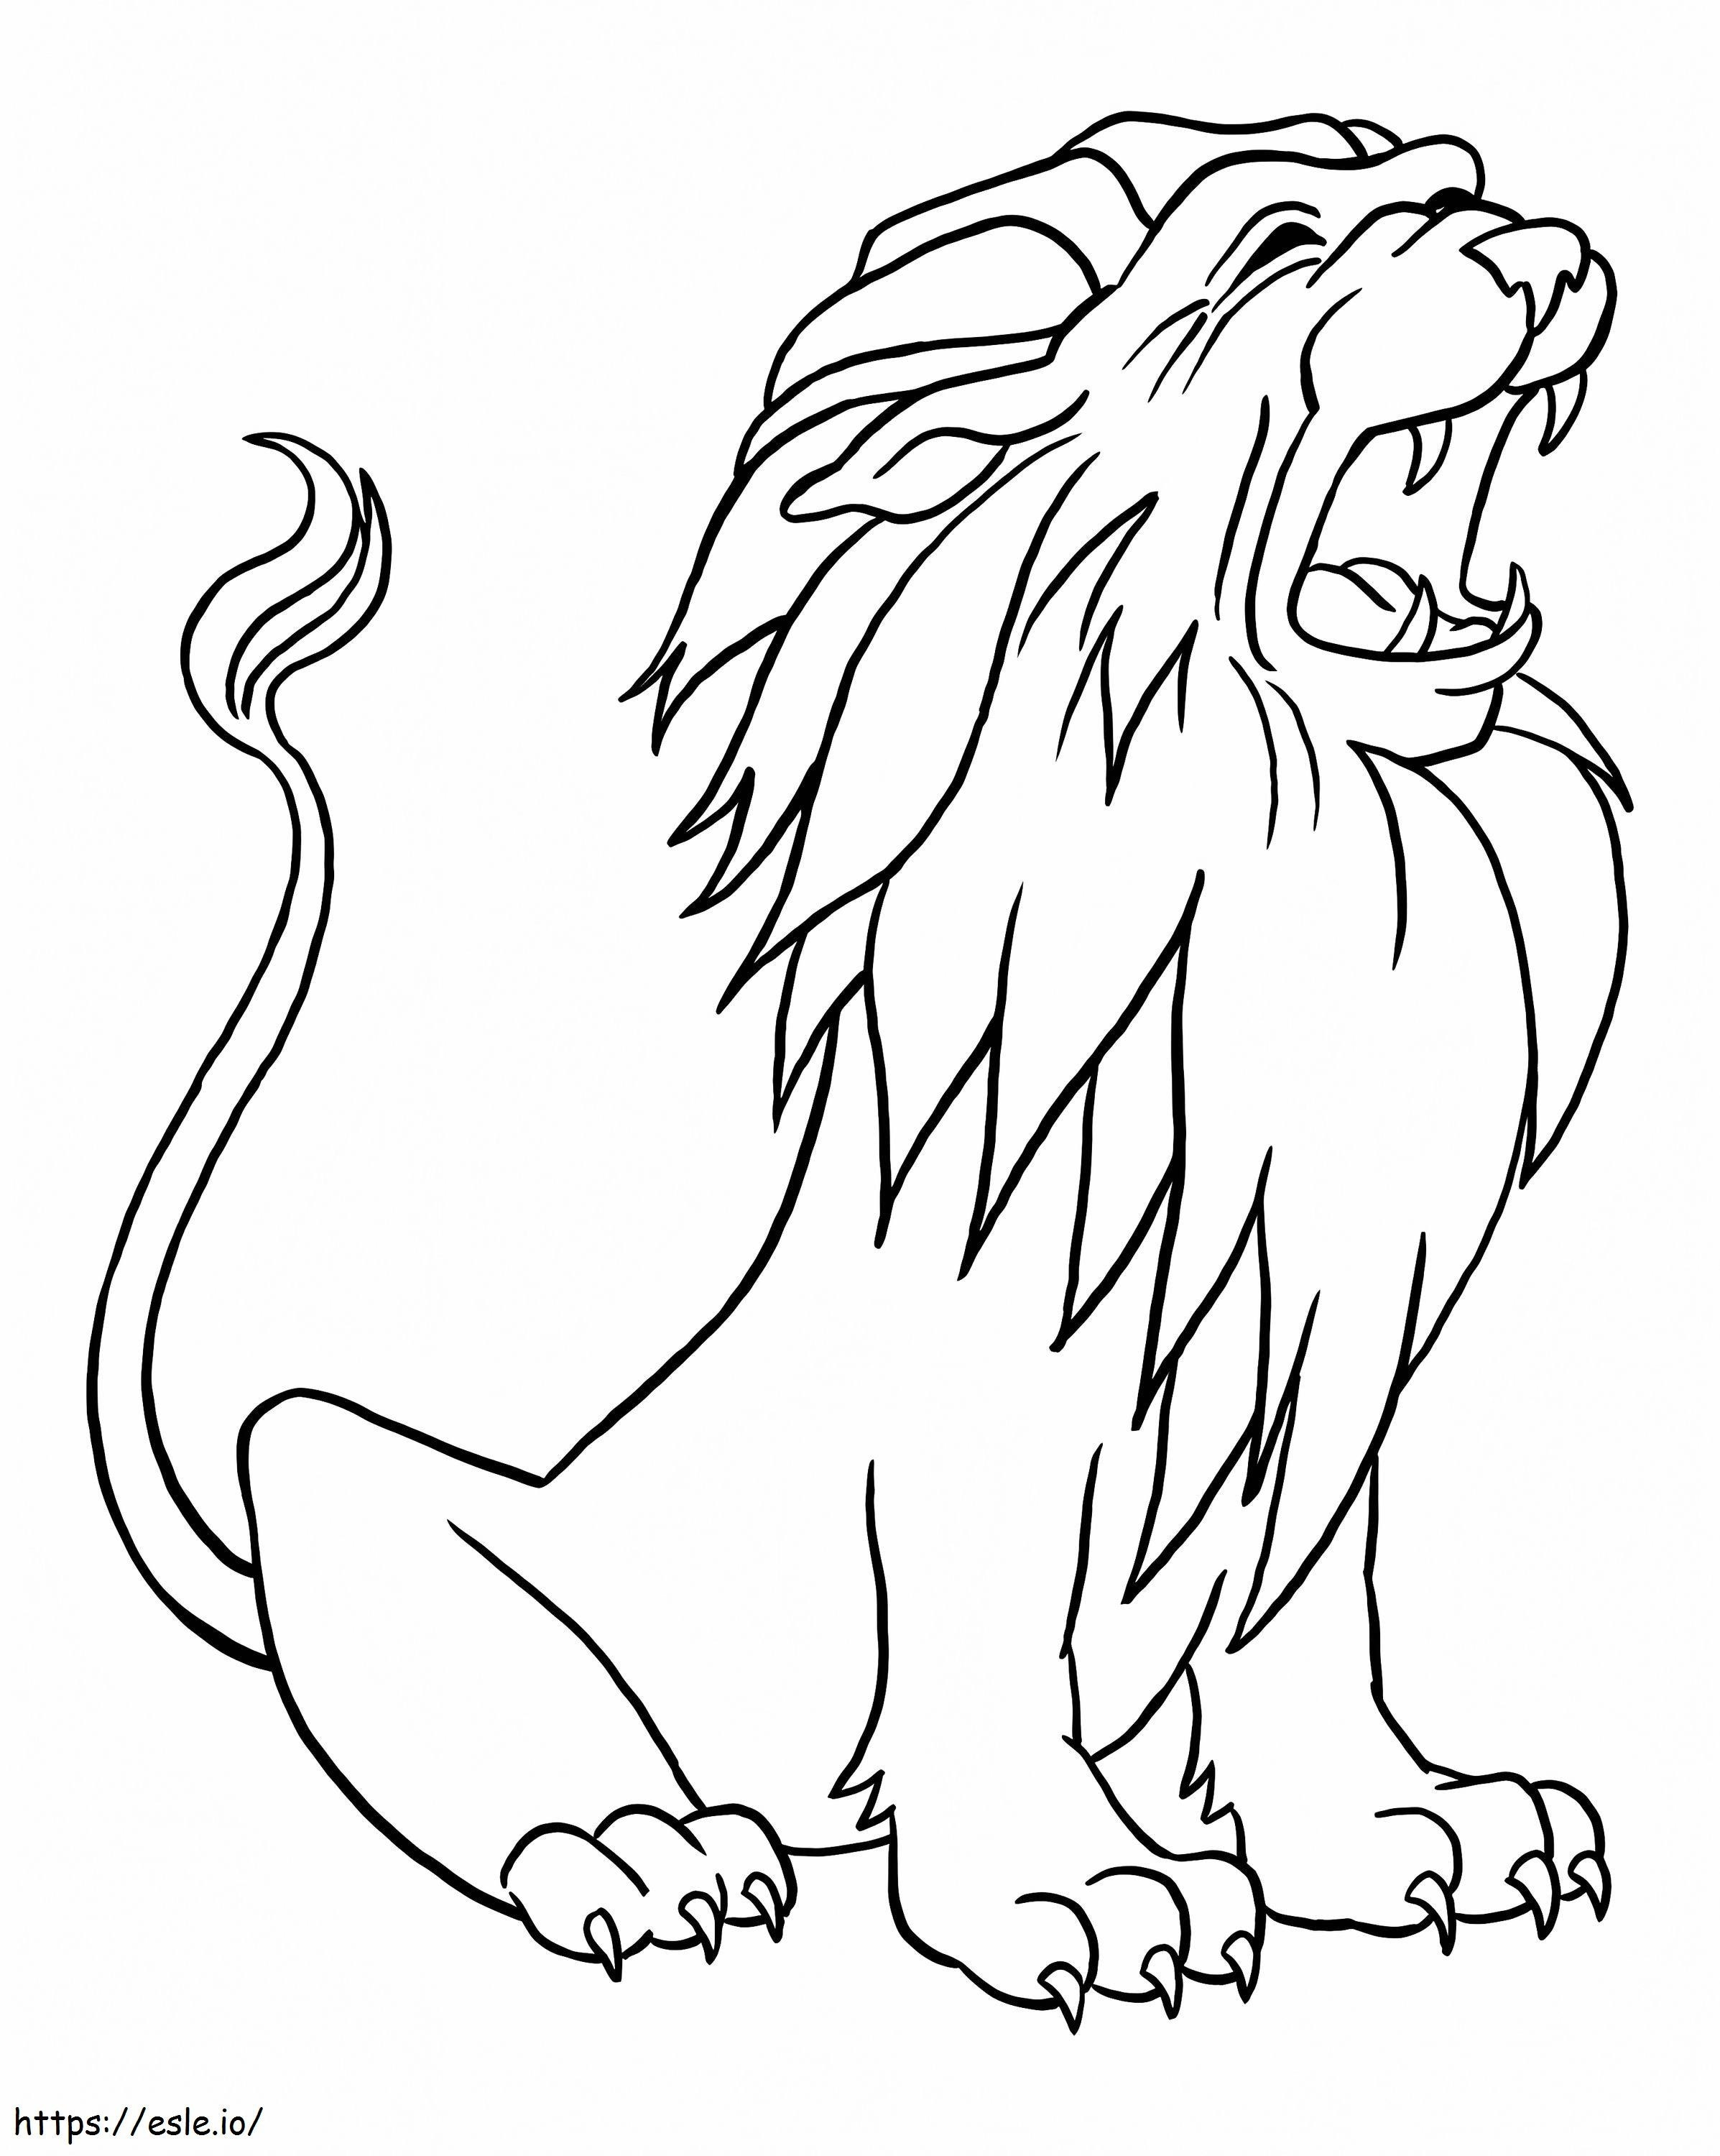  Leão rugindo A4 para colorir